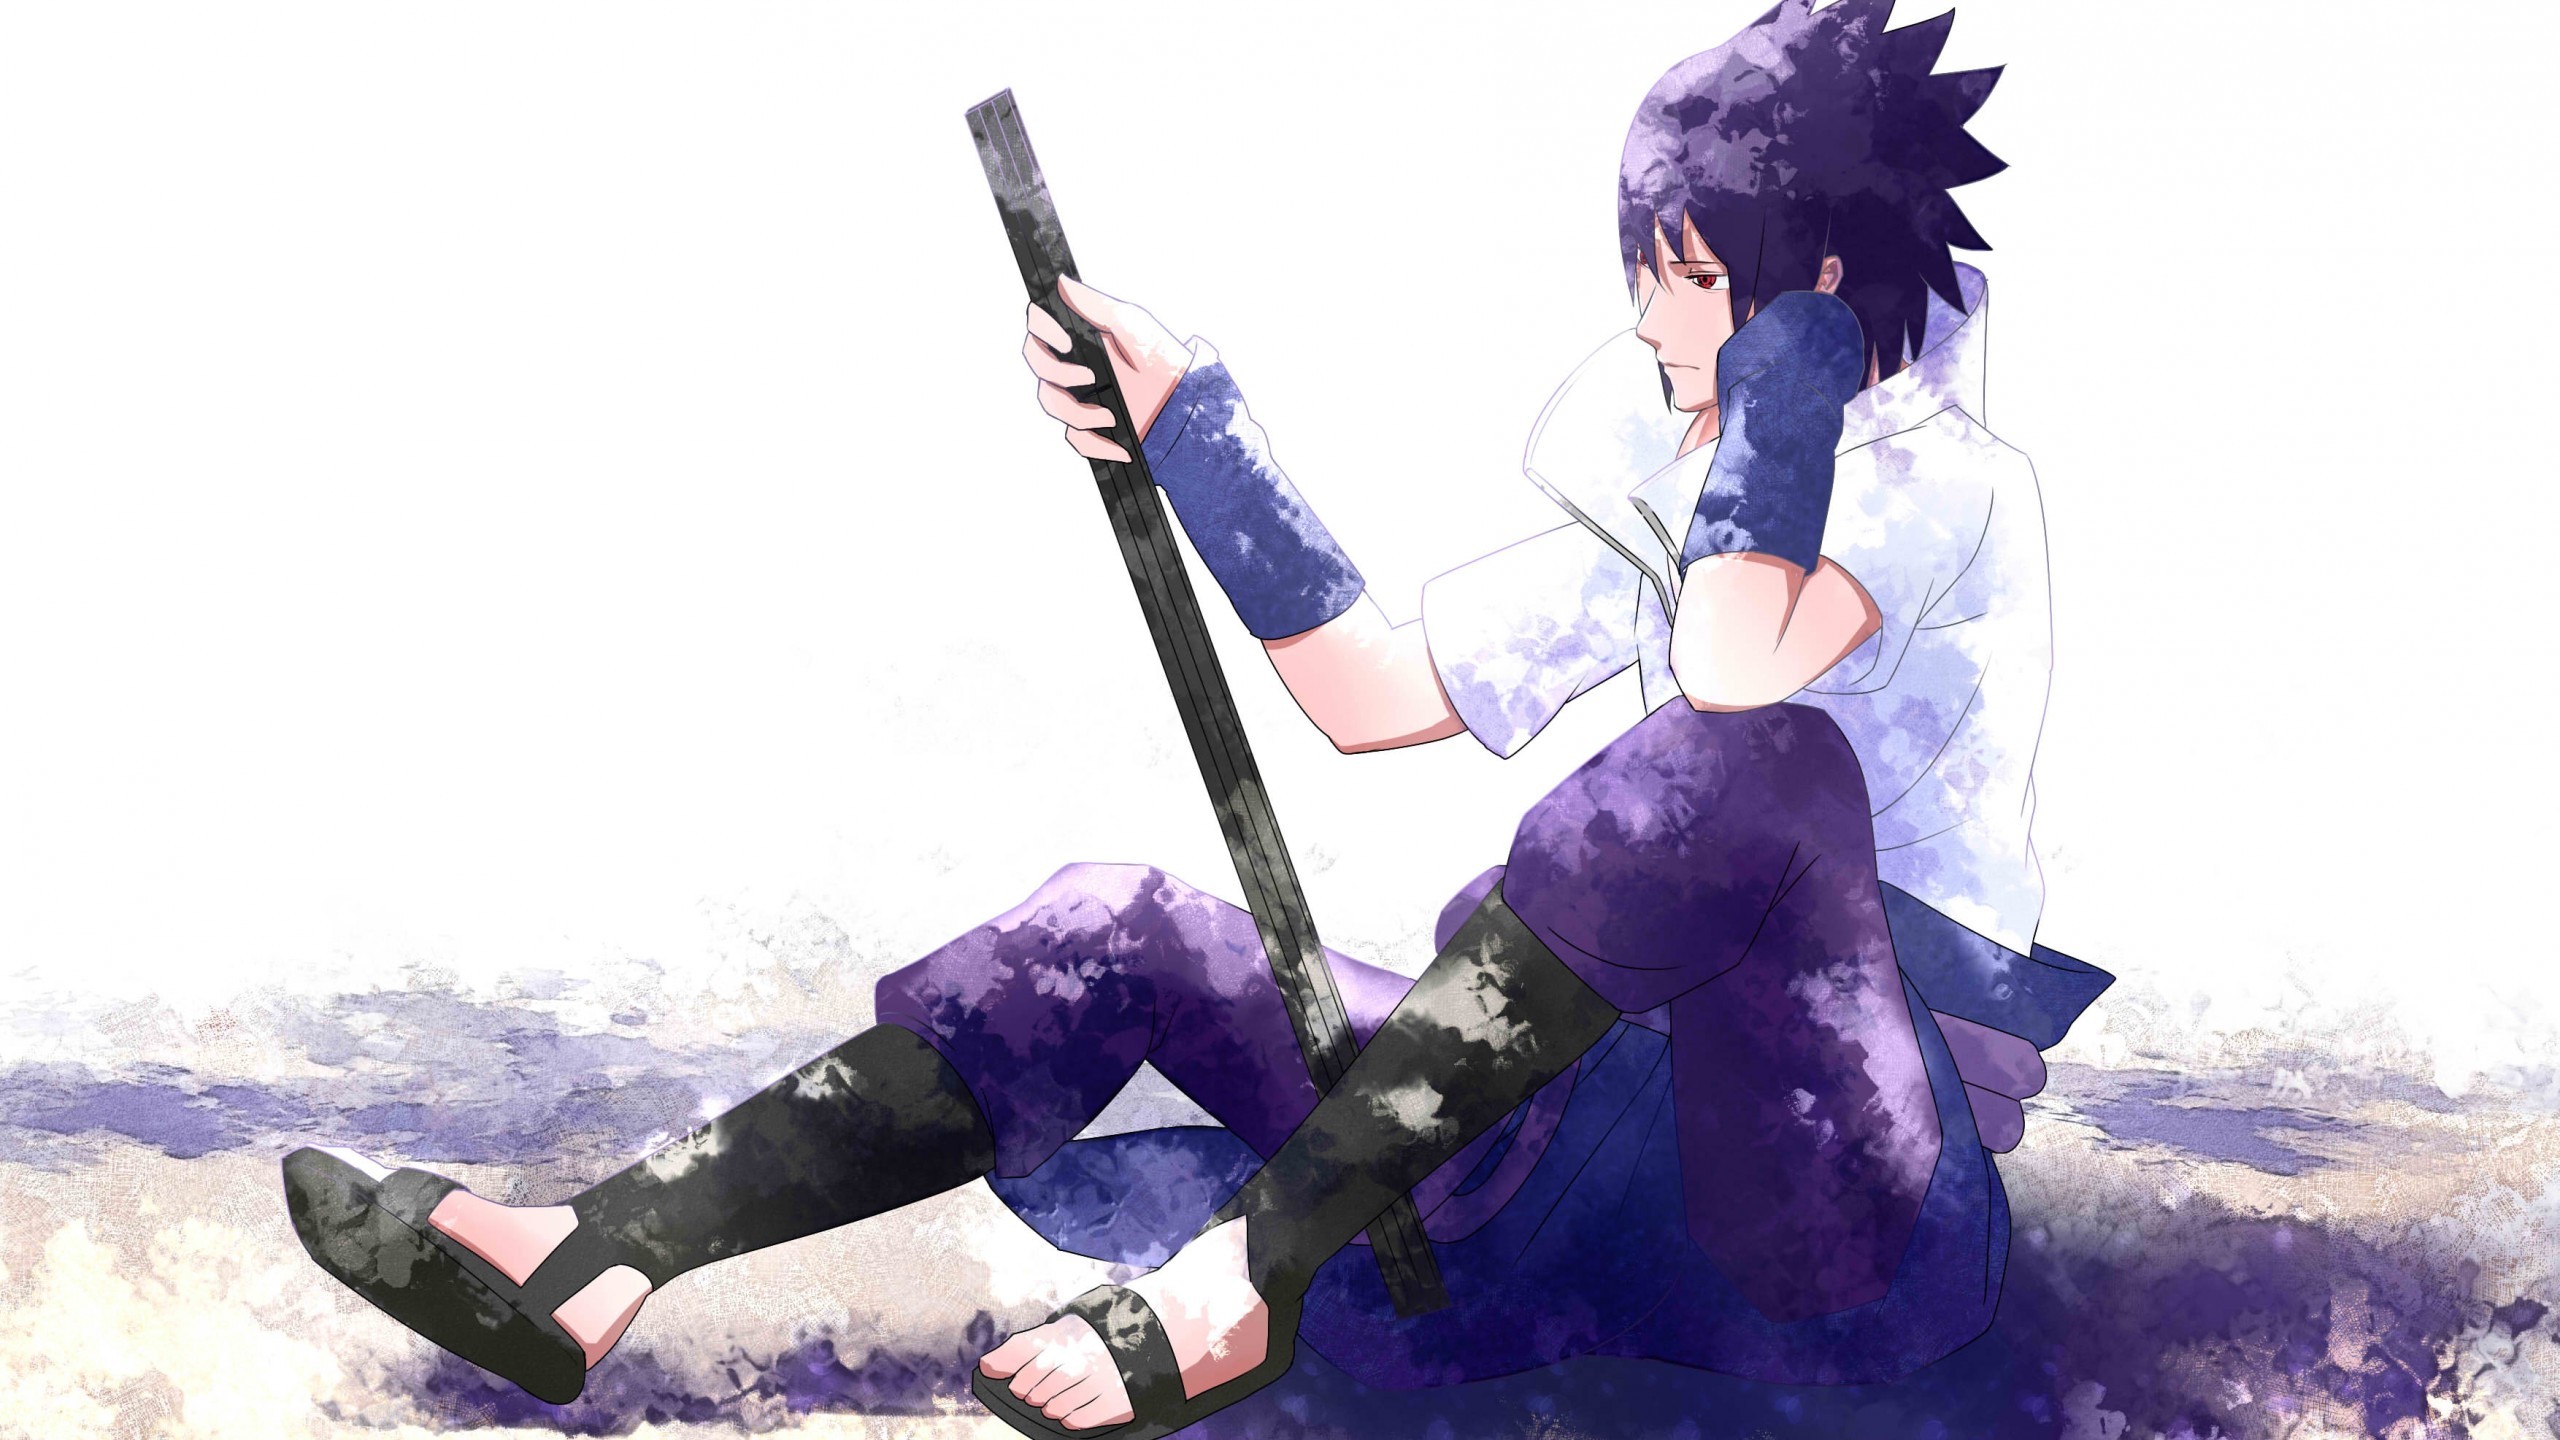 Uchiha Sasuke, Sword, Profile View, Naruto, Sit - Fondos De Pantalla Sasuke  4k - 2560x1440 Wallpaper - teahub.io